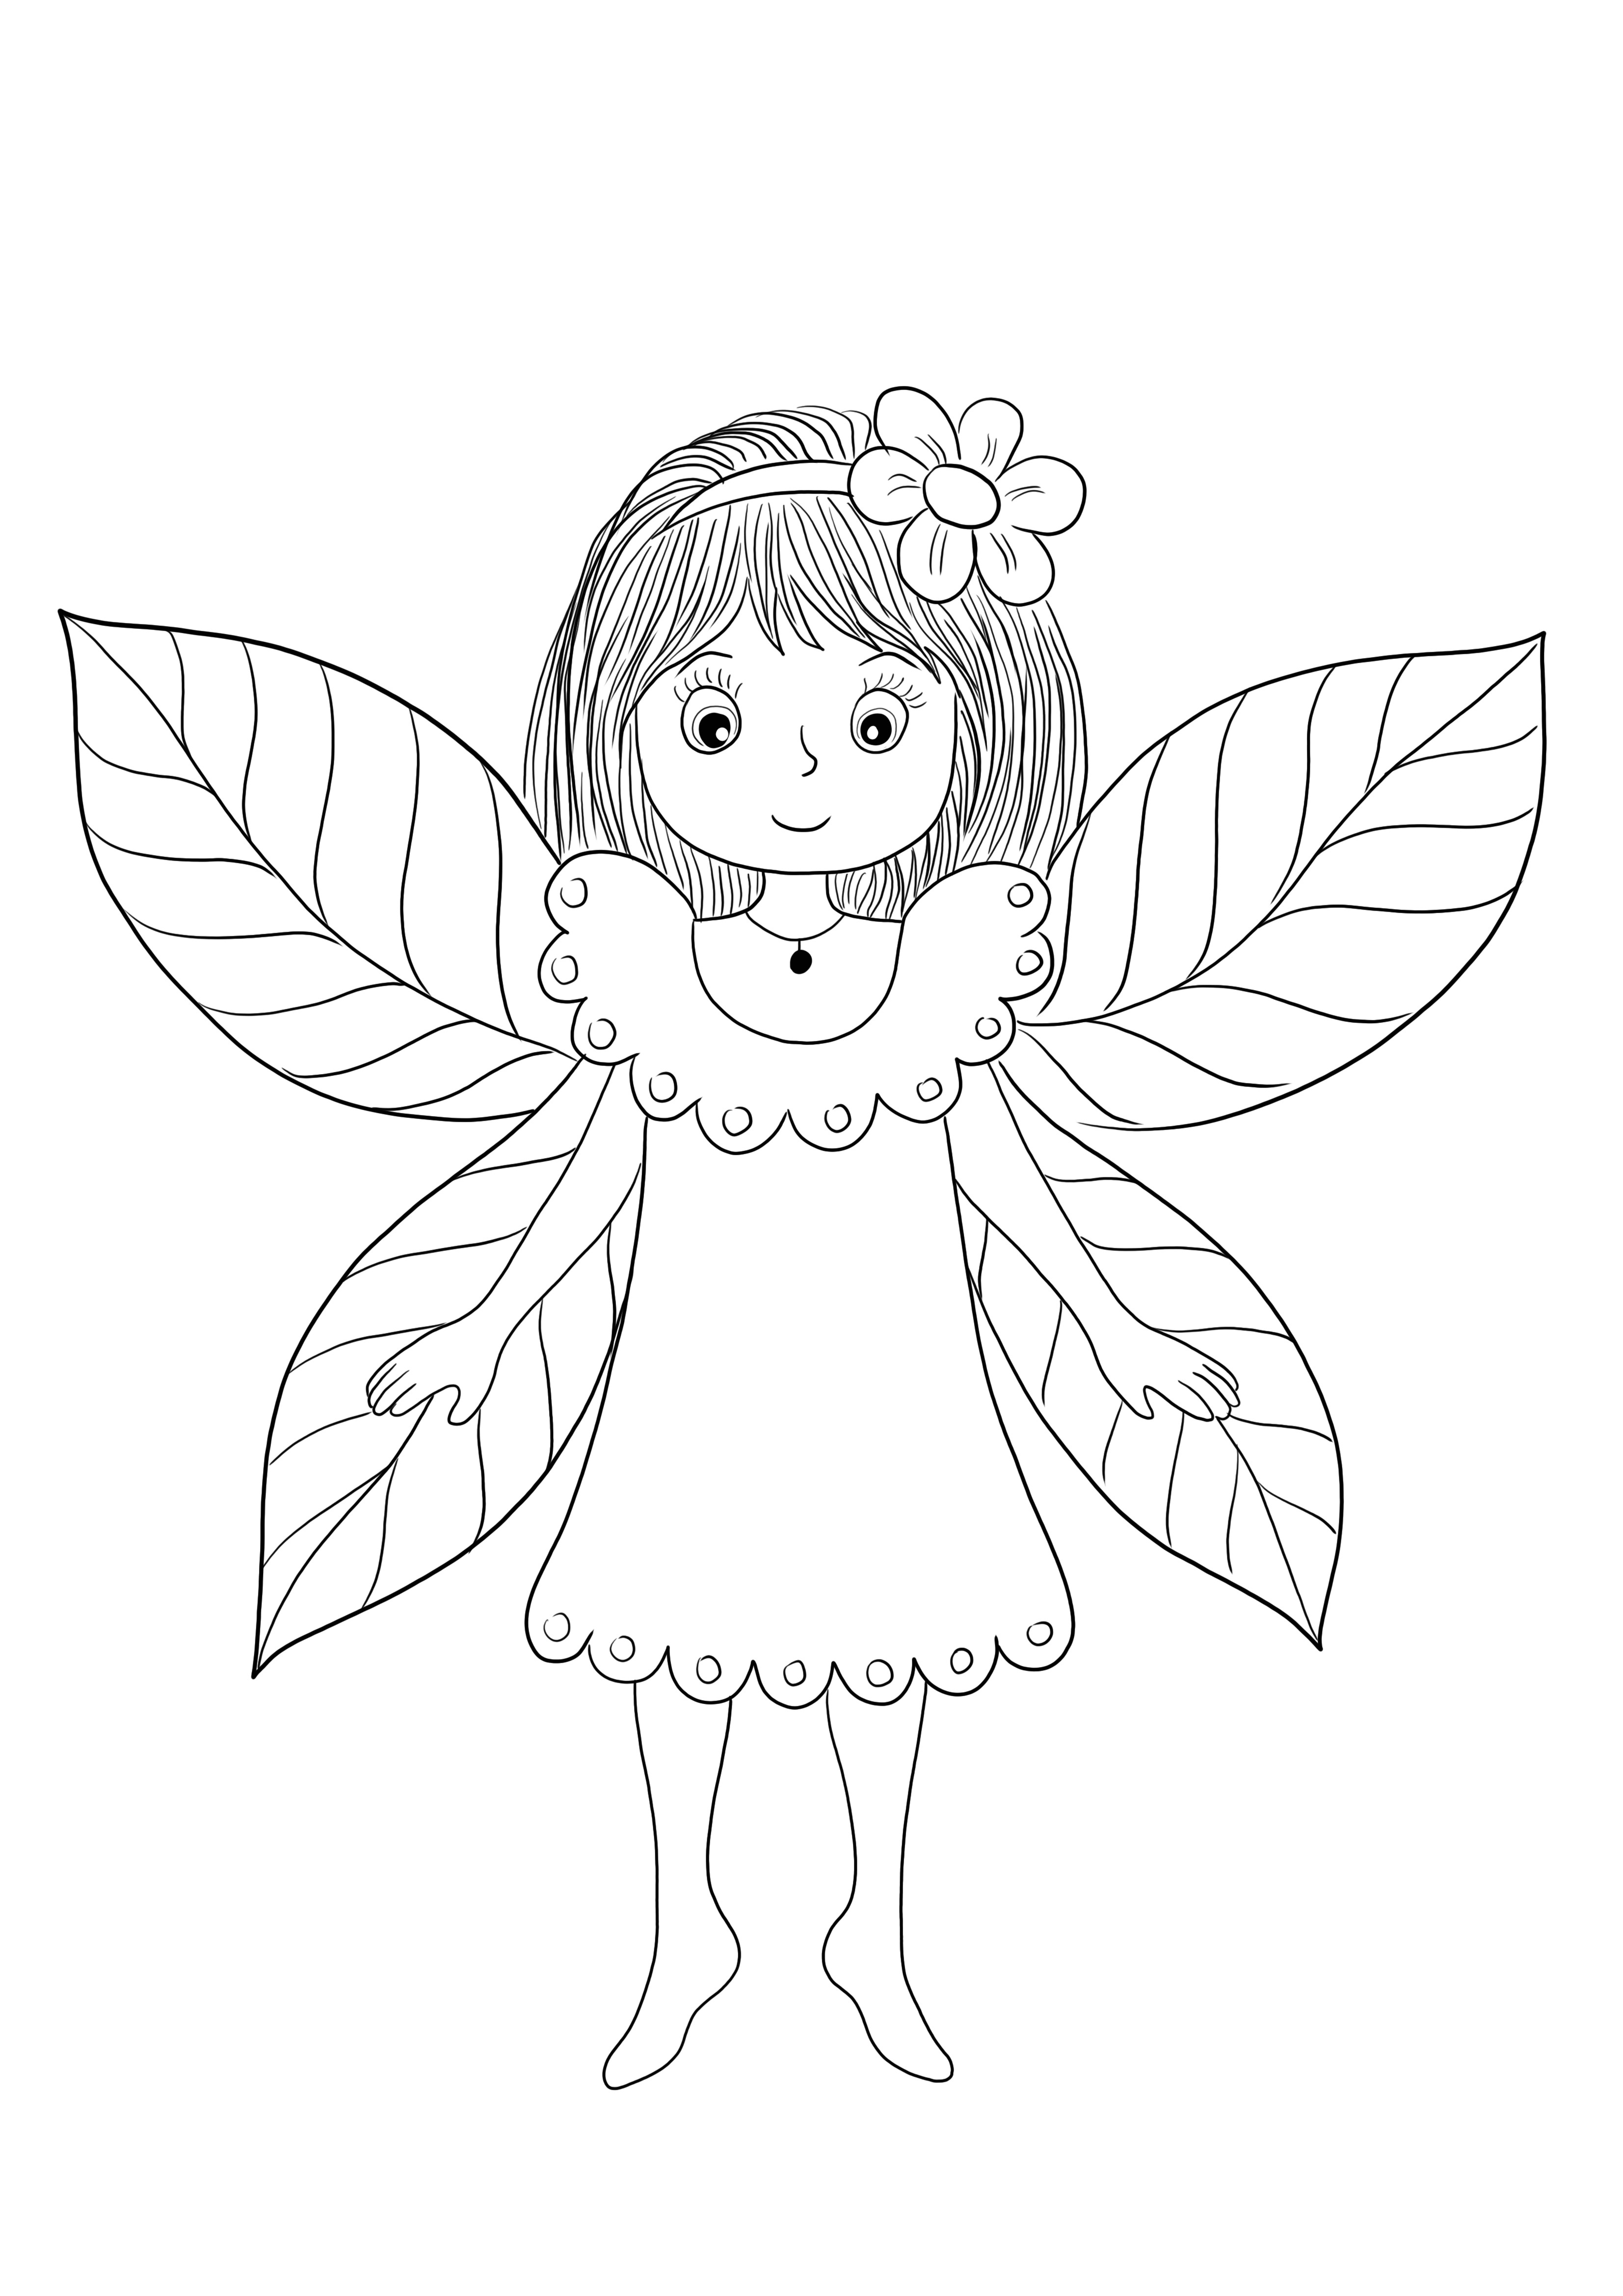 翼を持つ妖精は準備ができており、自由に印刷して色付けすることができます